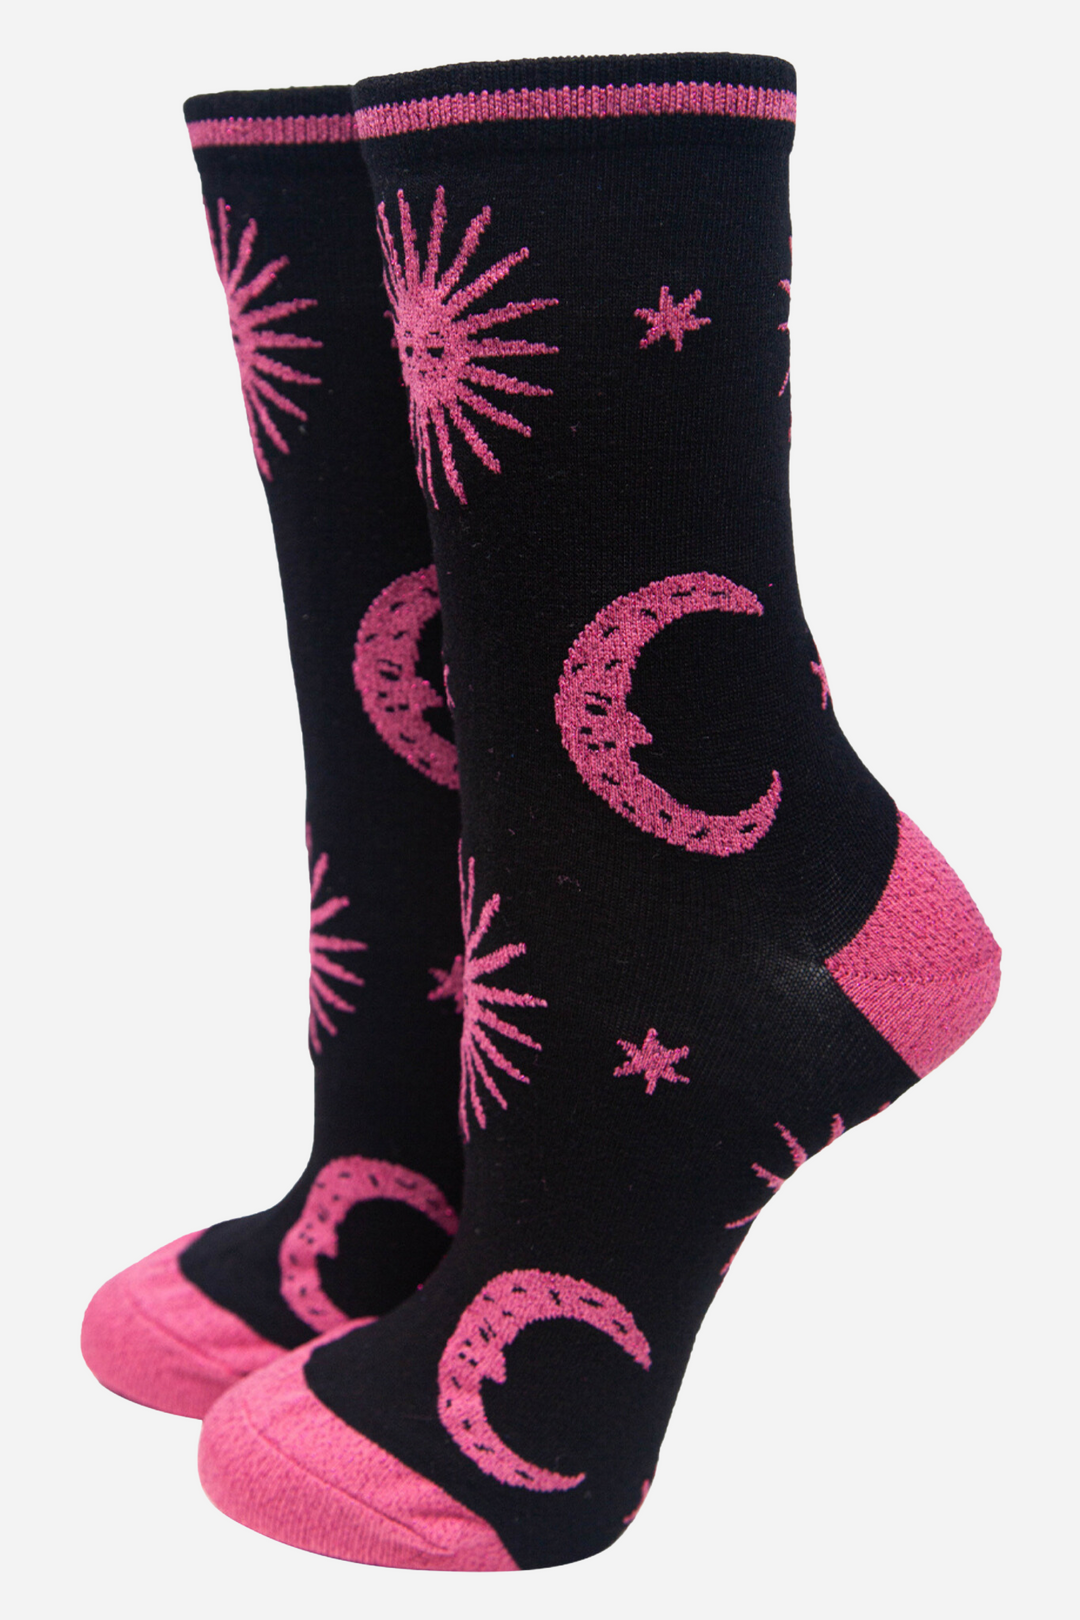 Women's Bamboo Glitter Socks Celestial Novelty Ankle Socks Star Moon Gift Set Box